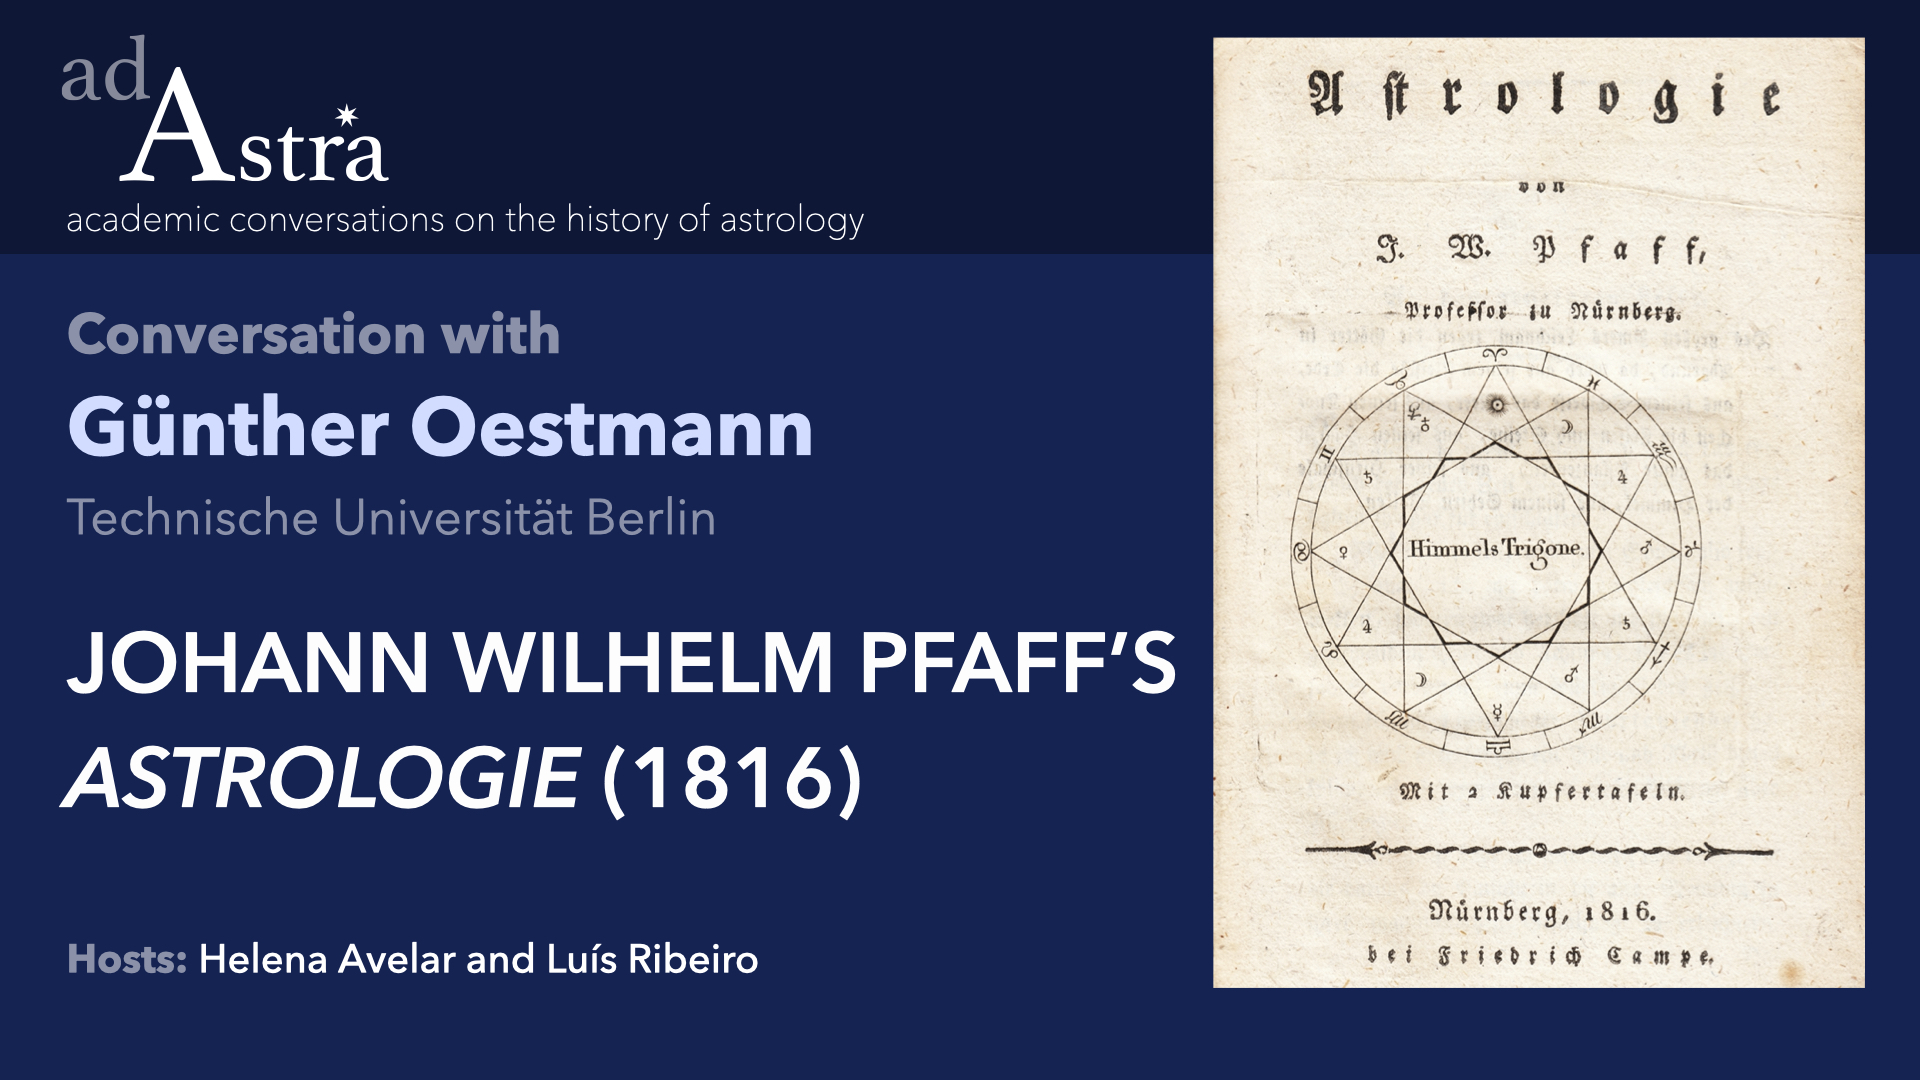 Johann Wilhelm Pfaff's "Astrologie" (1816) with Günther Oestmann